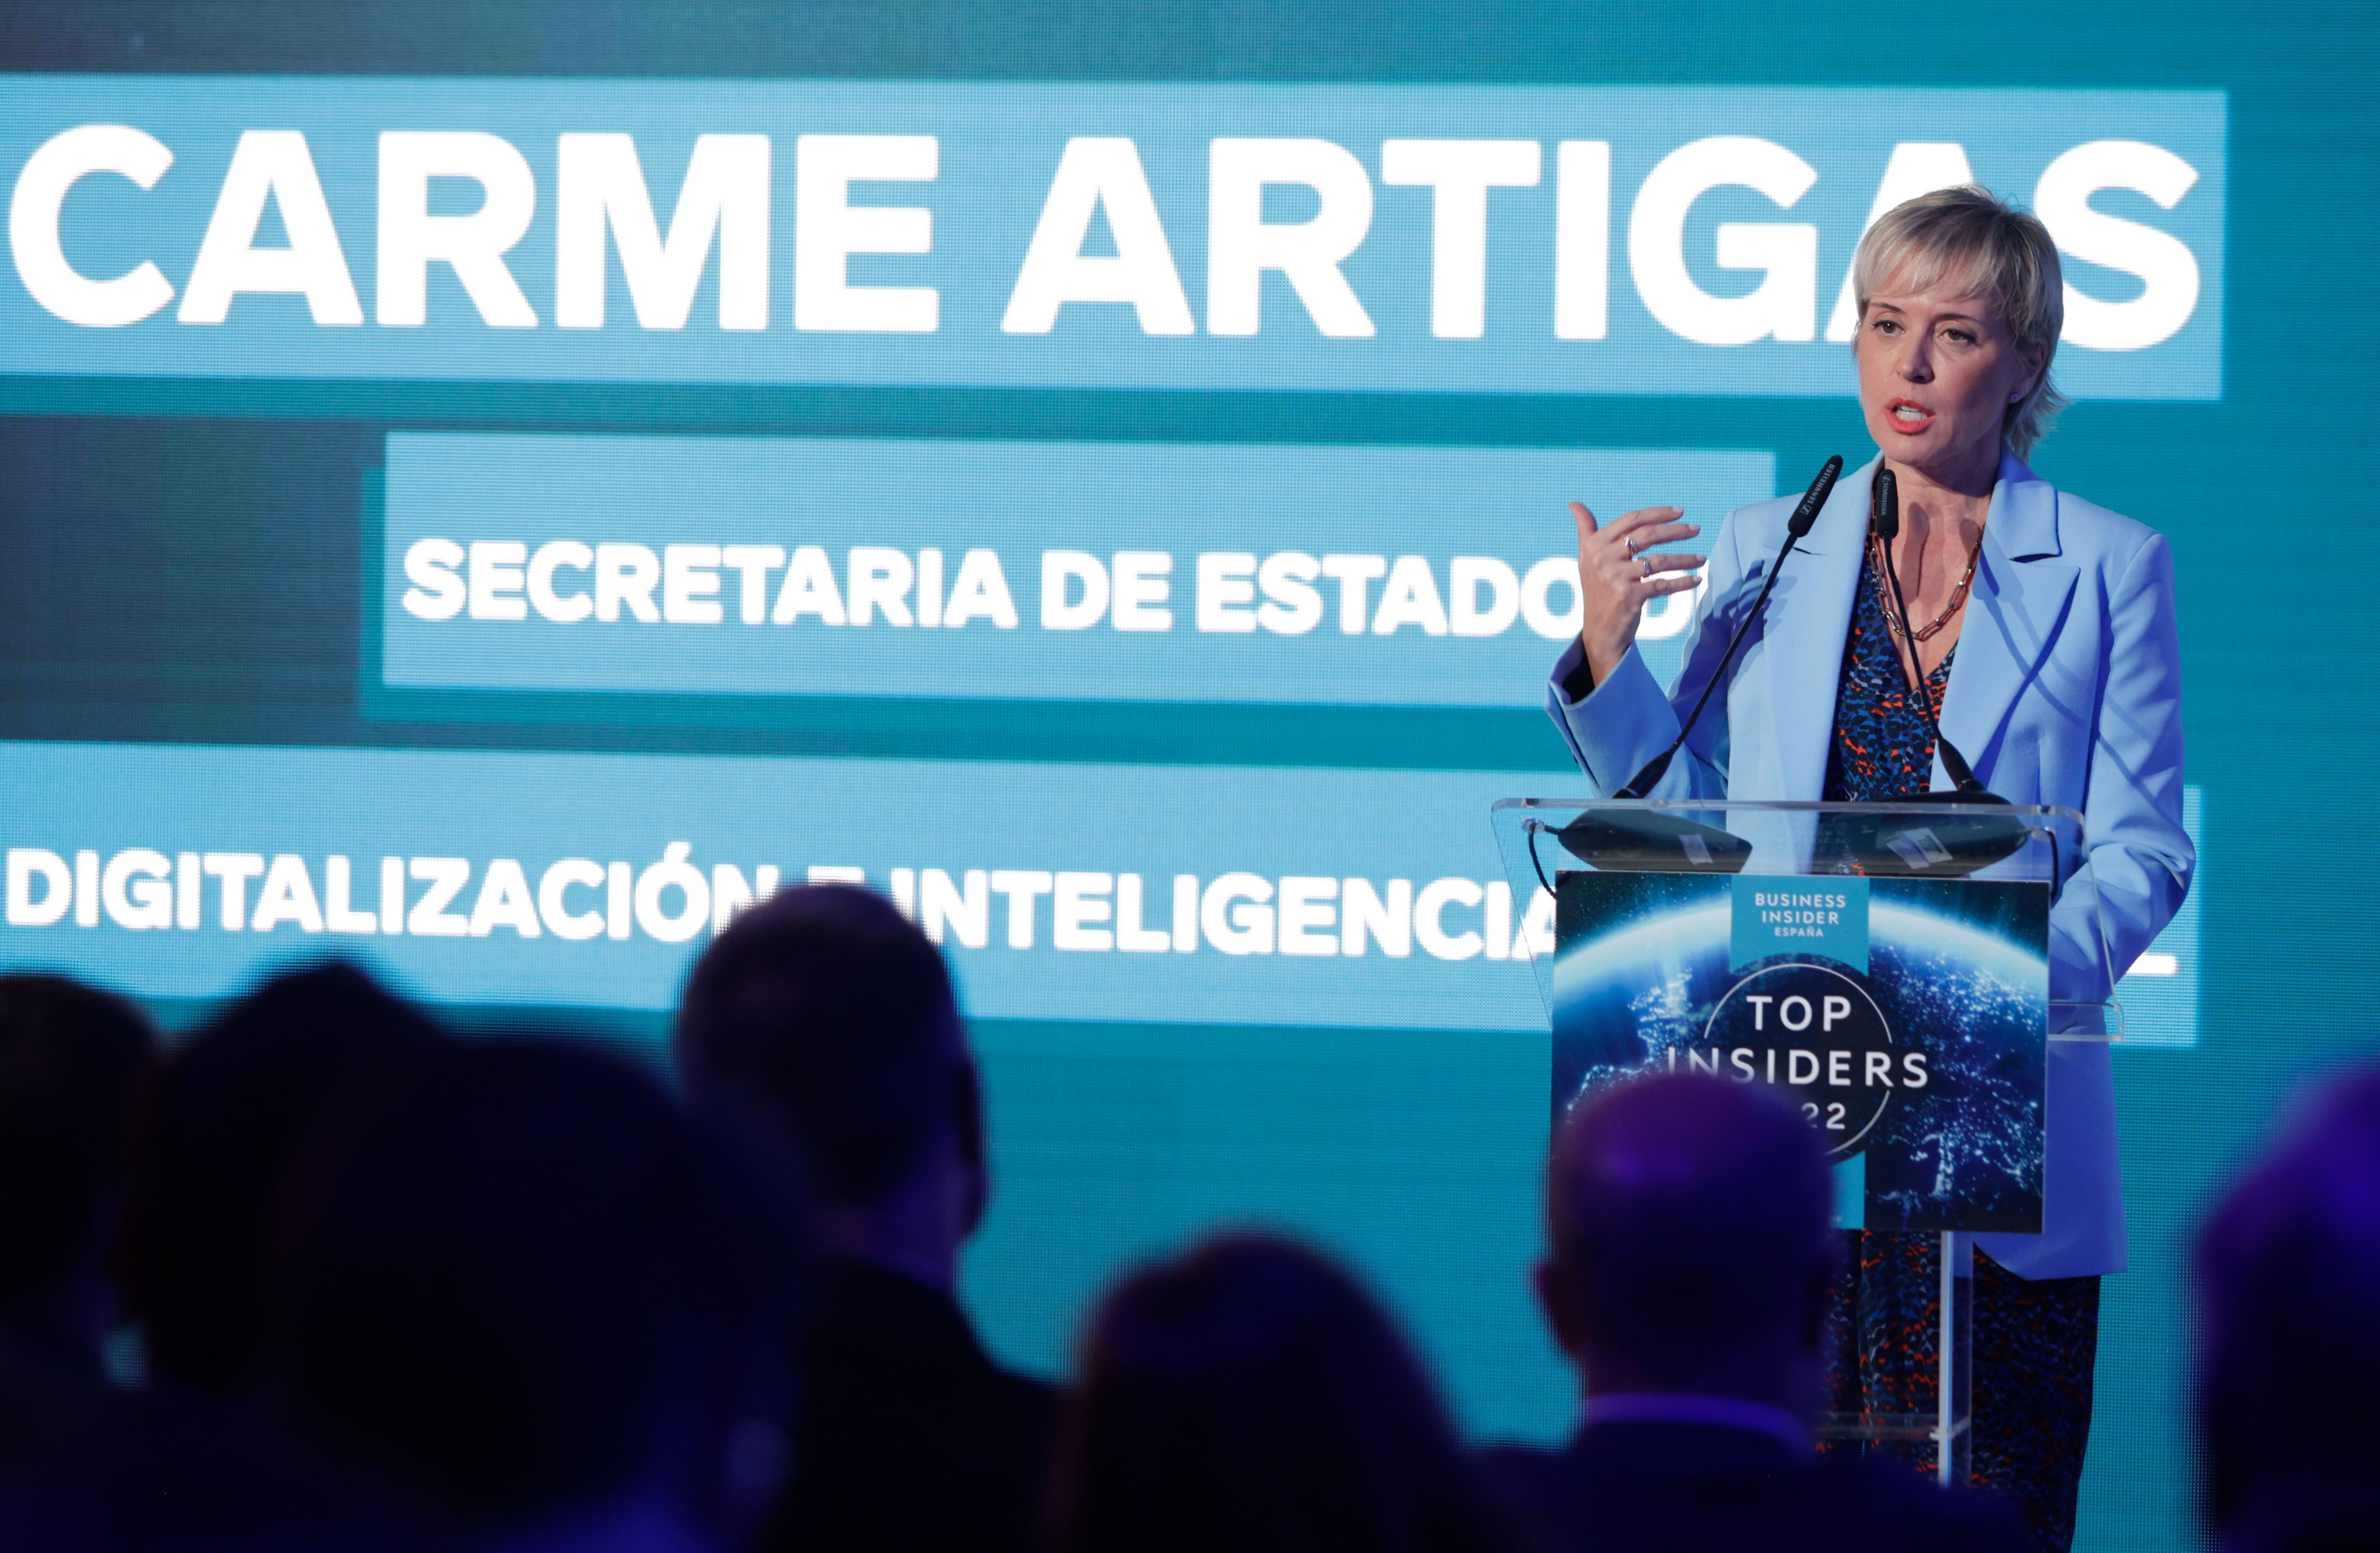 Carme Artigas, secretaria de Estado de Digitalización e Inteligencia Artificial.